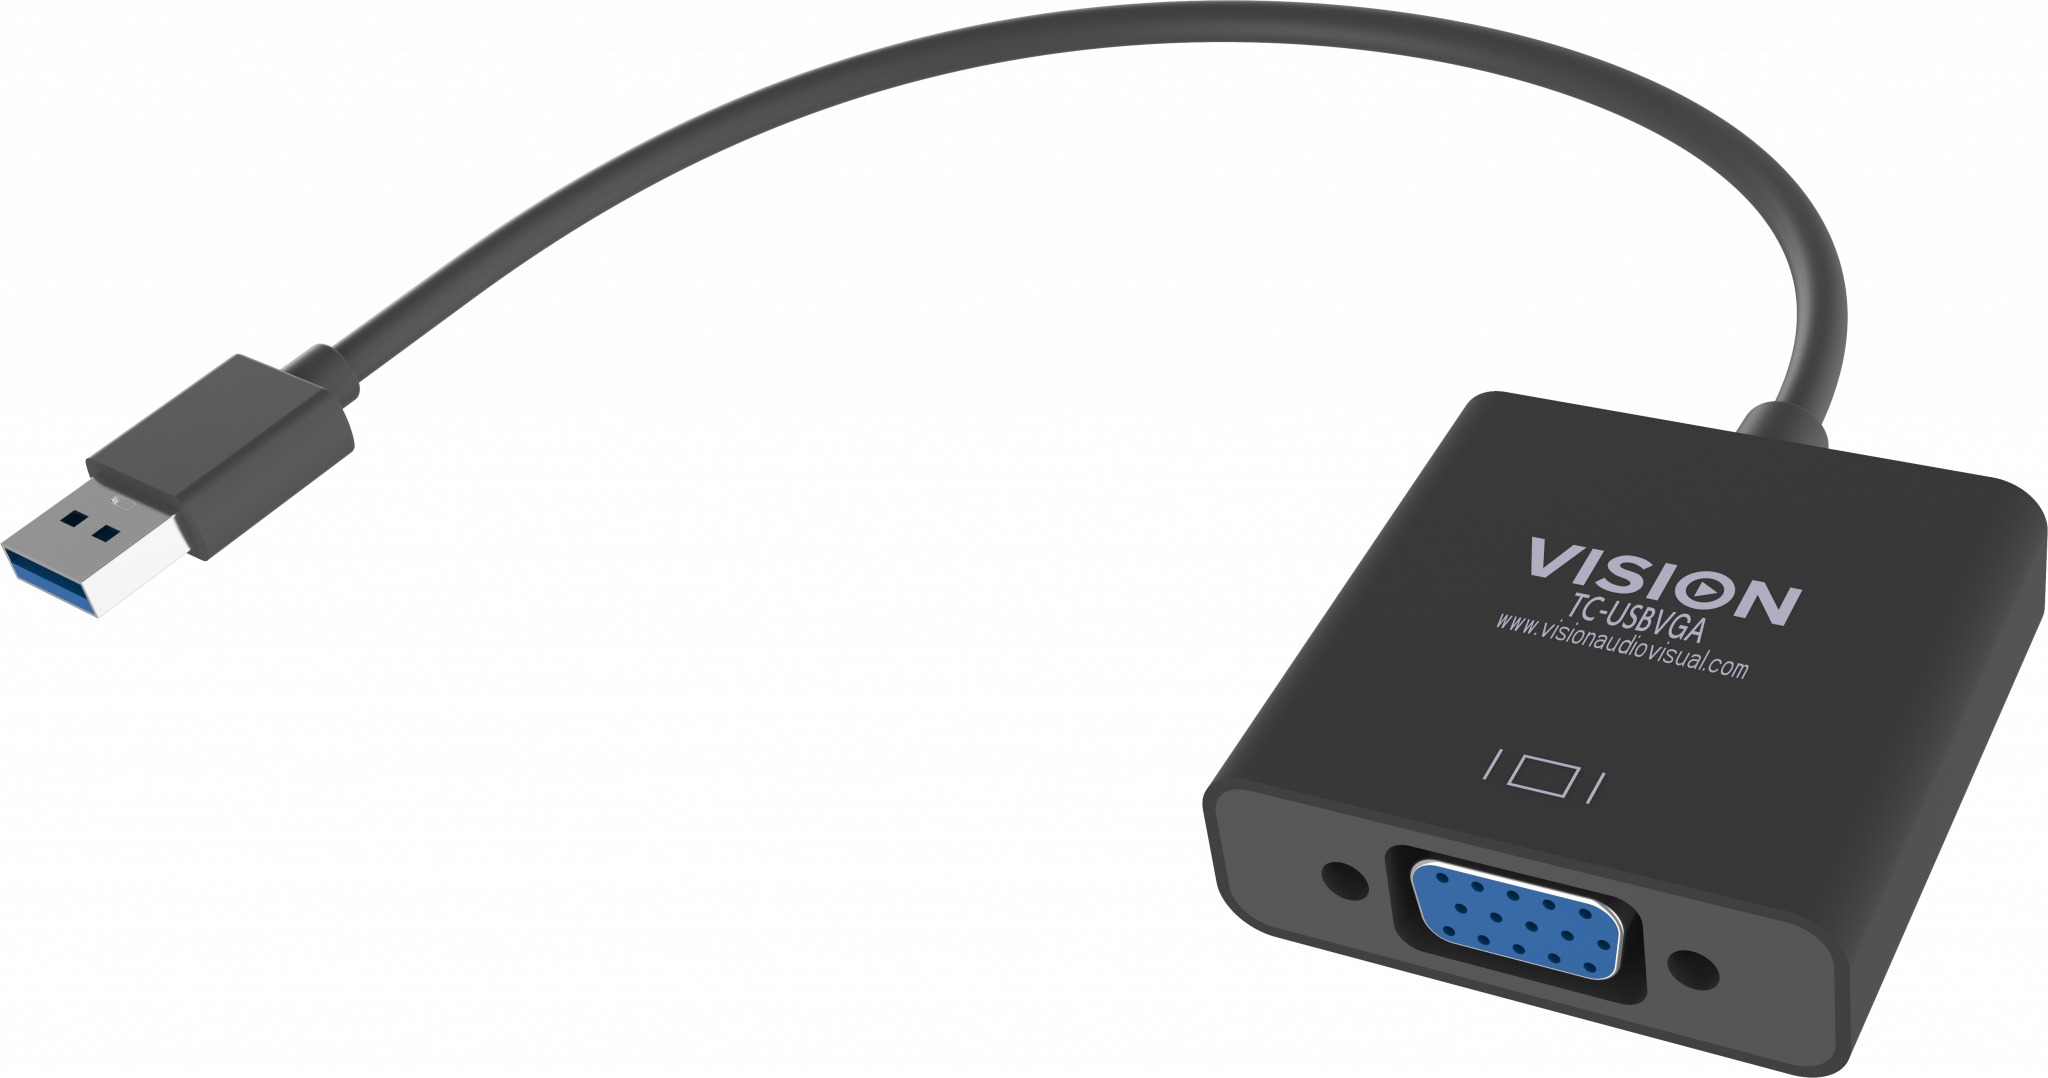 An image showing Adattatore professionale da USB 3.0 a VGA nero